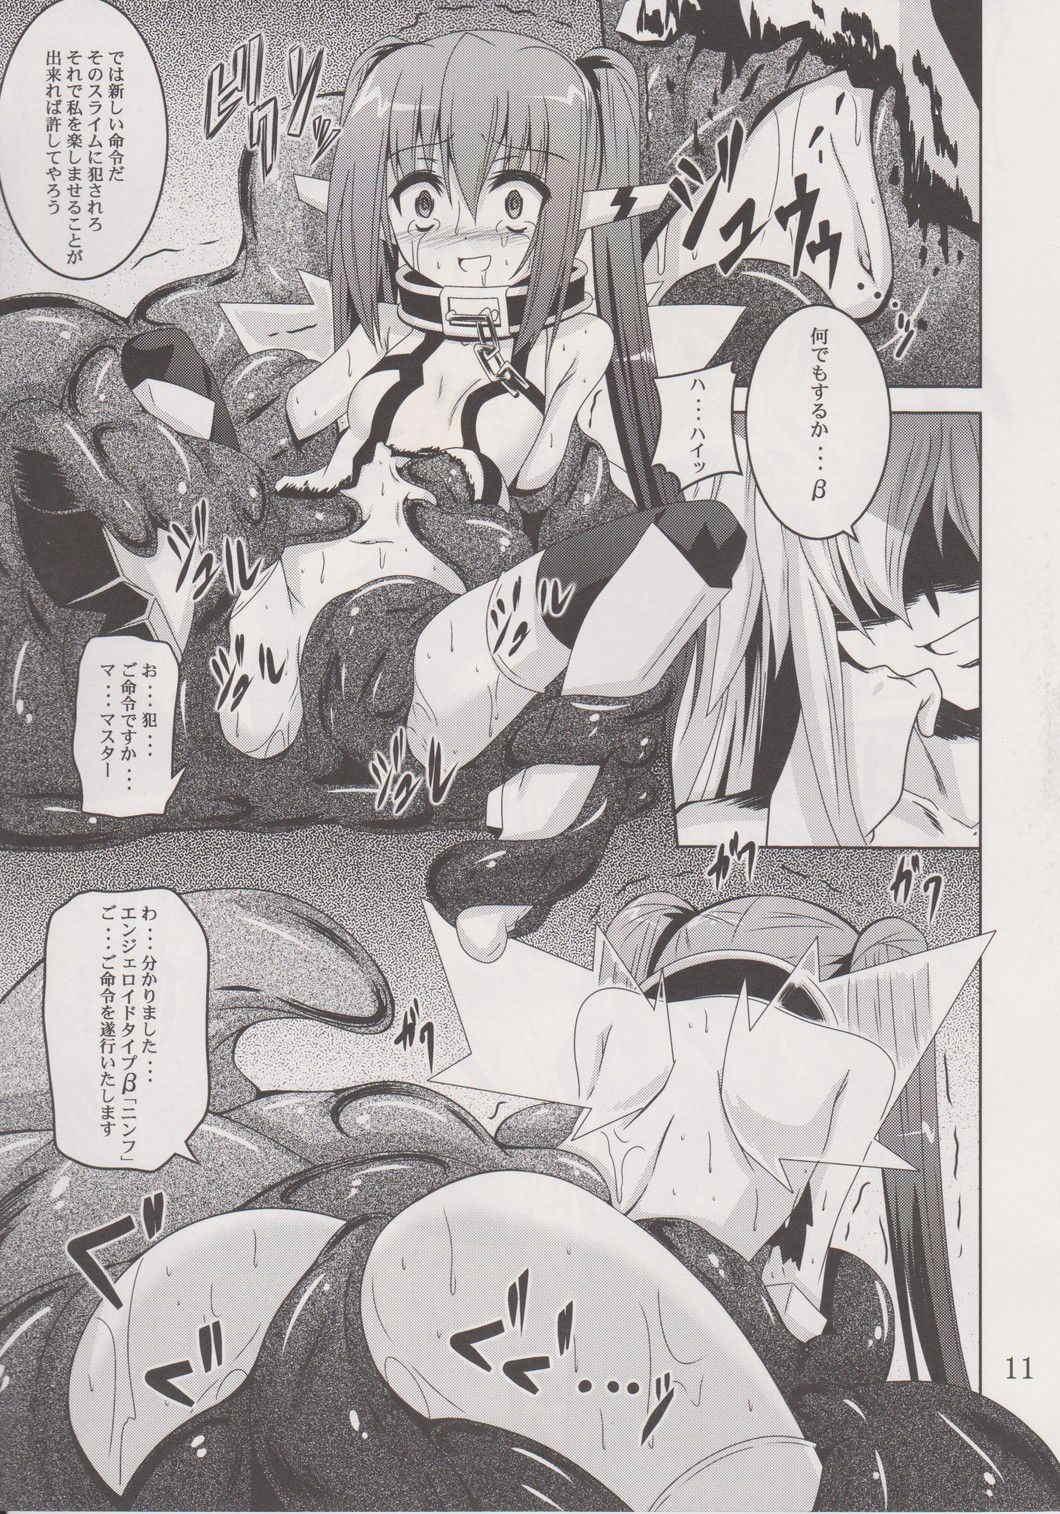 Juggs β2 - Sora no otoshimono Mujer - Page 10